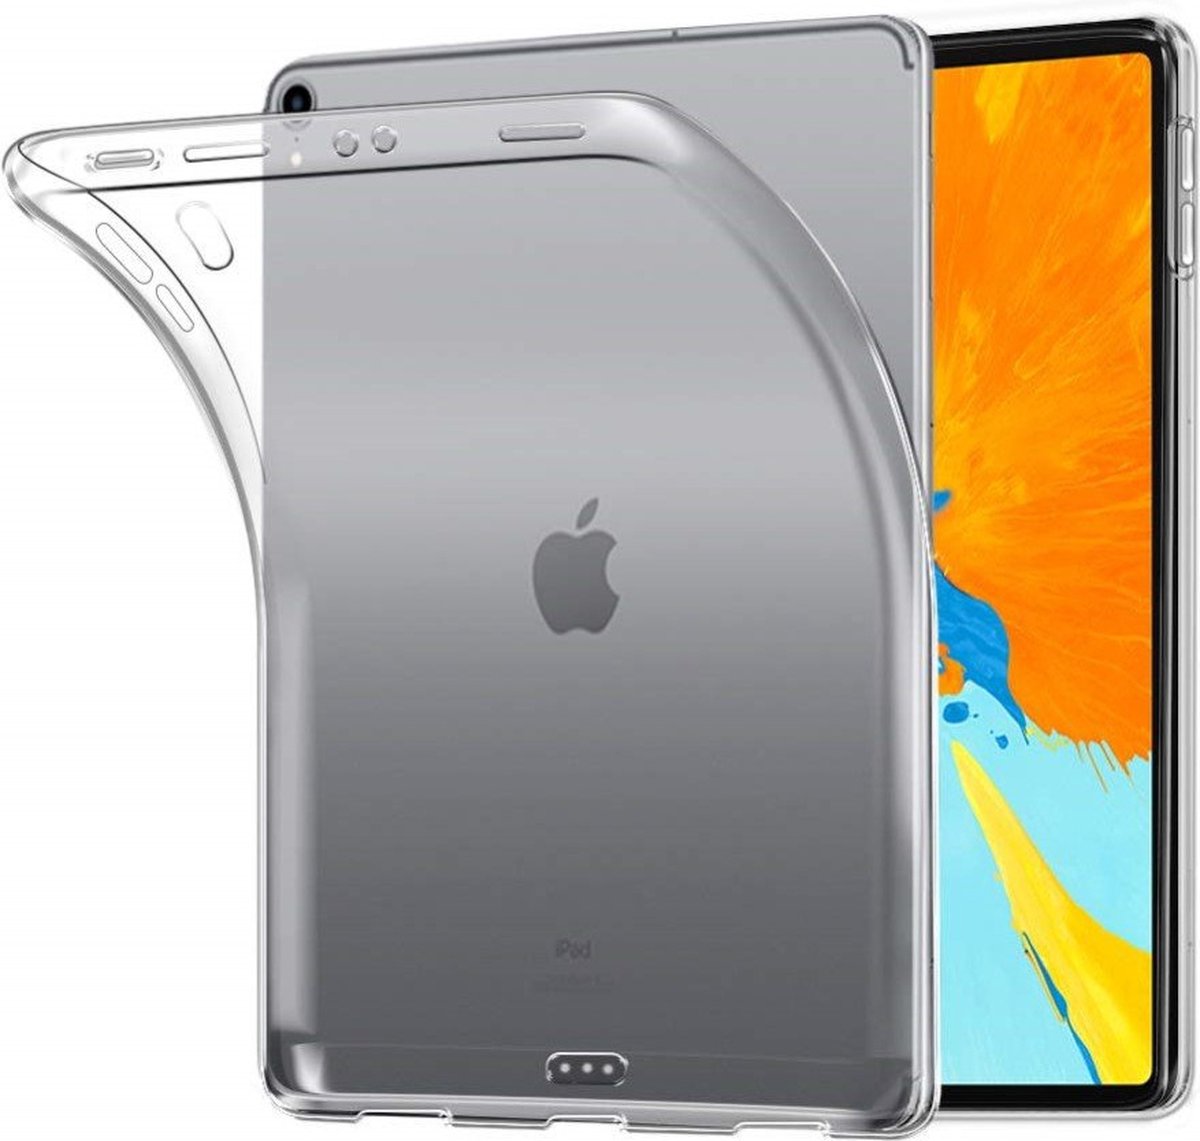 Apple iPad mini (2021) / iPad mini (6th generation) 8.3